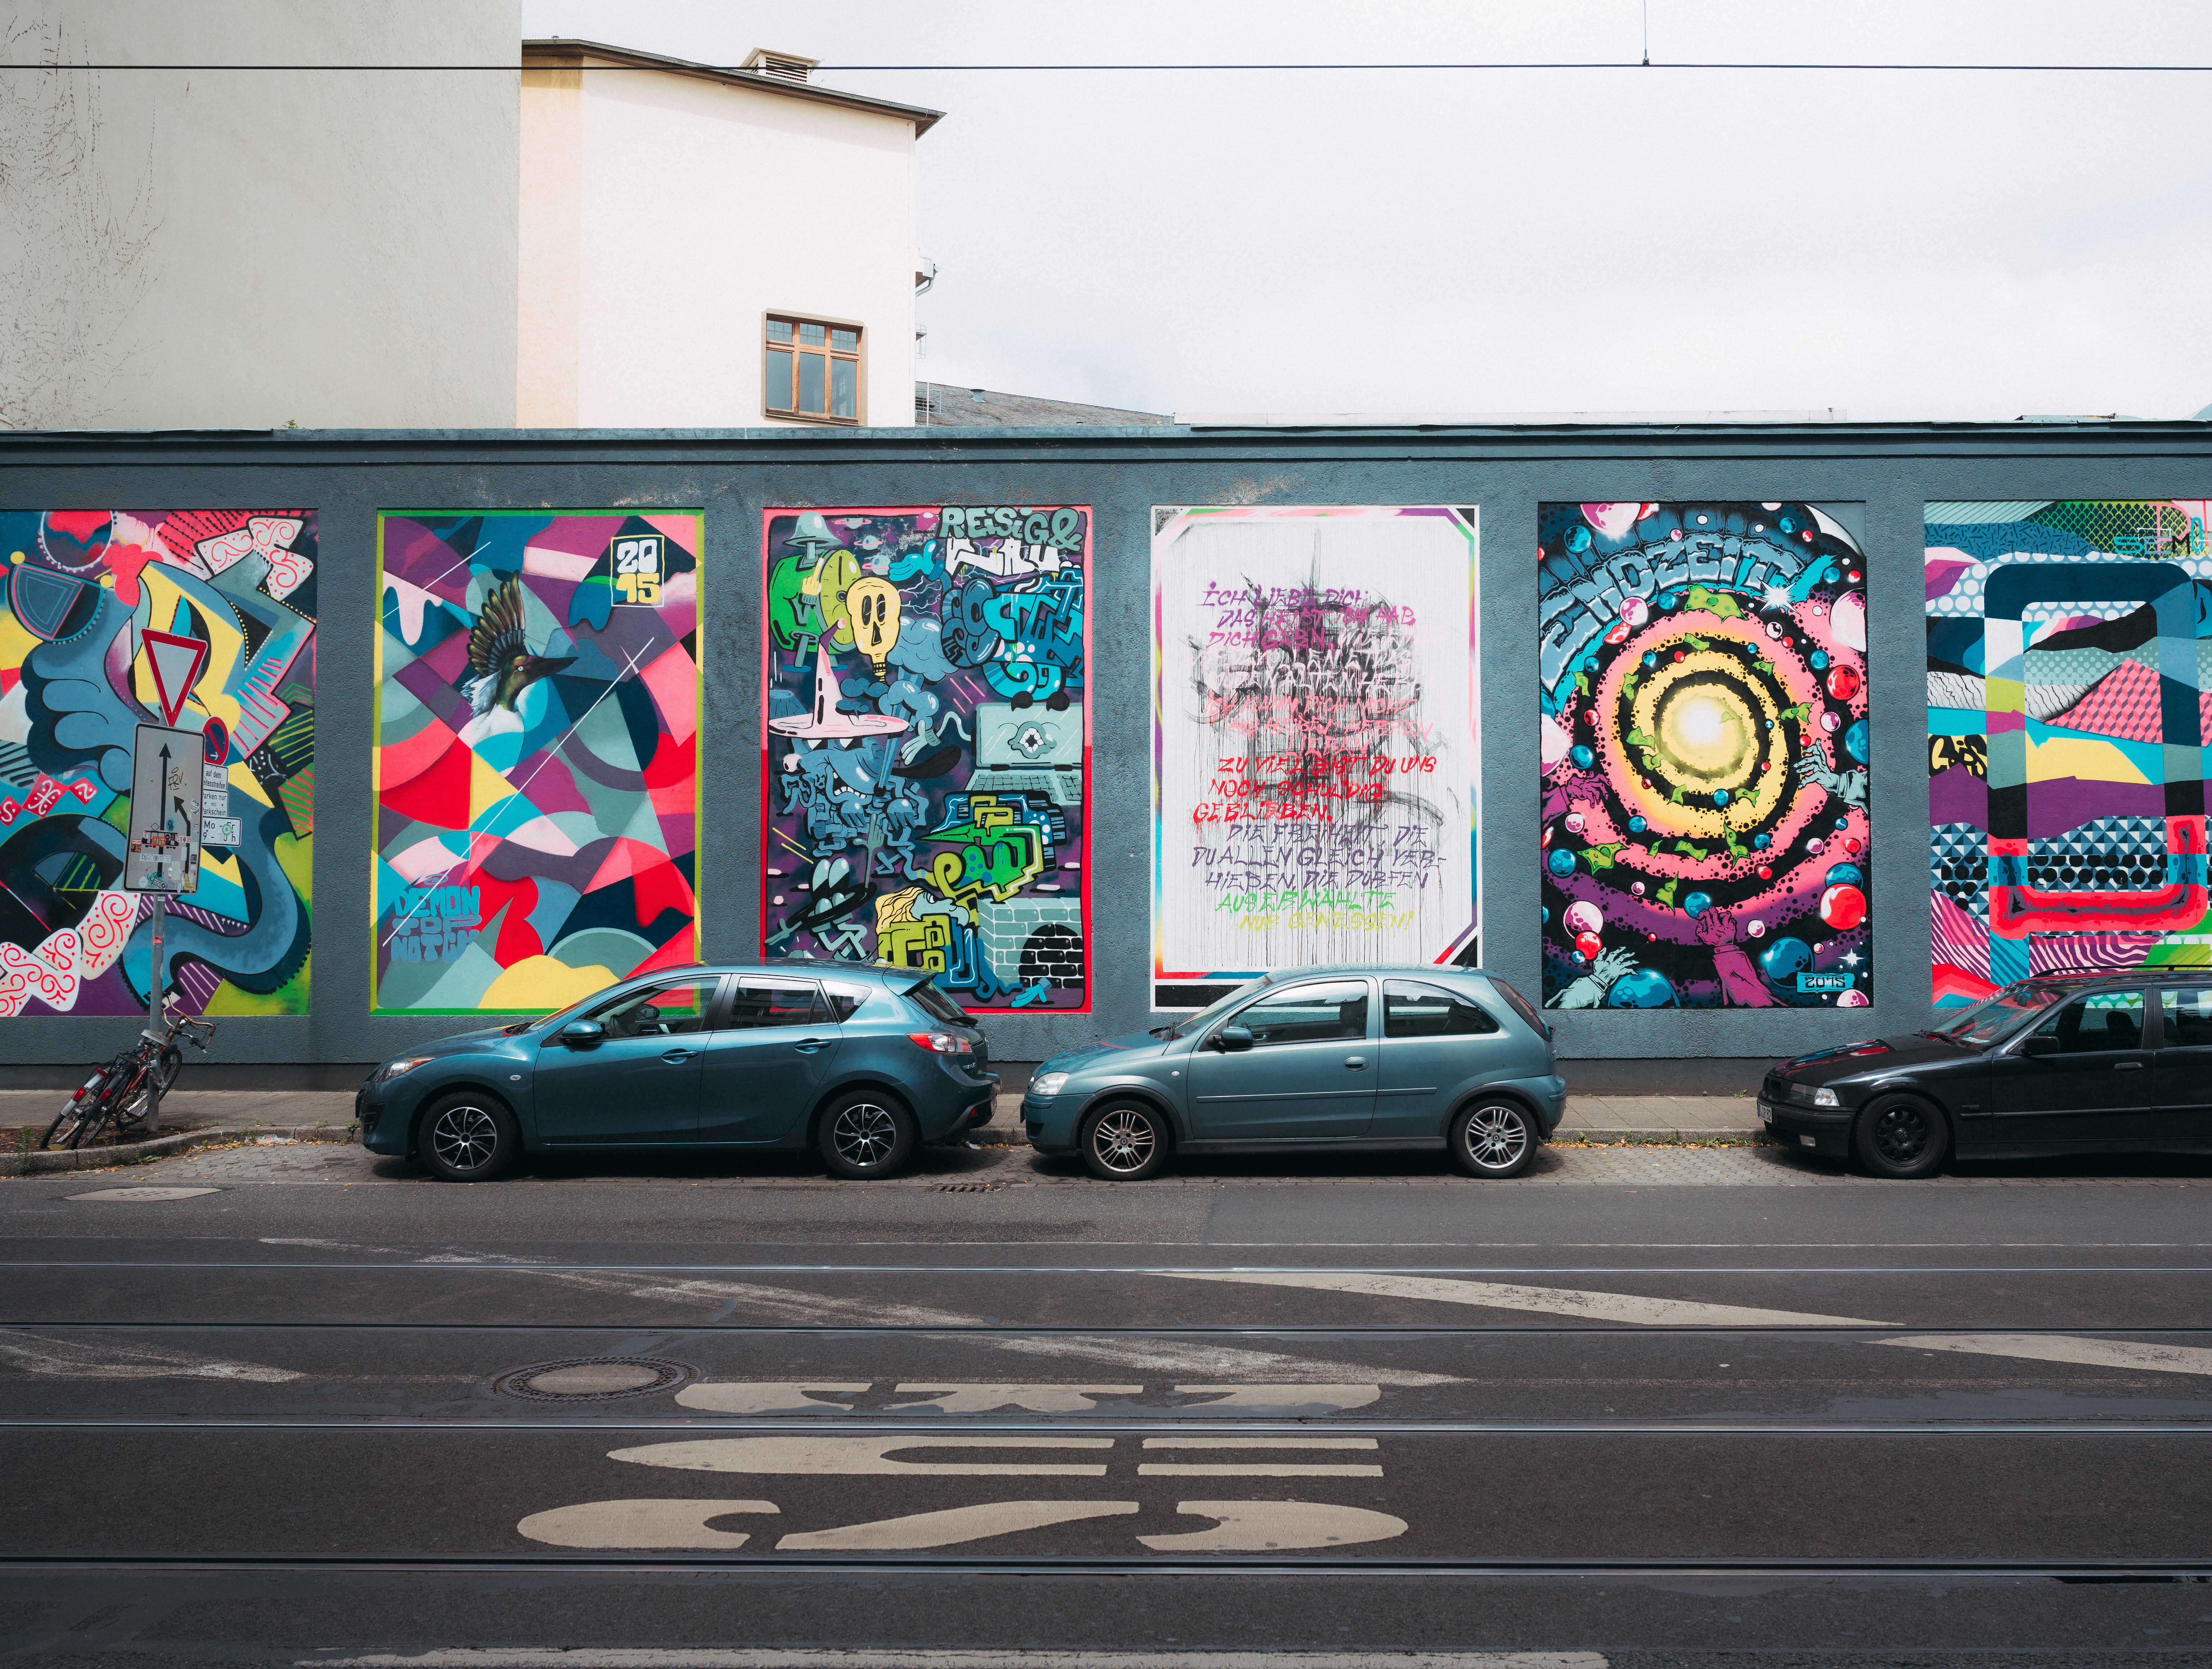 Bunte Street-Art-Mauer in Düsseldorf mit Kunstwerken wie in einer Galerie